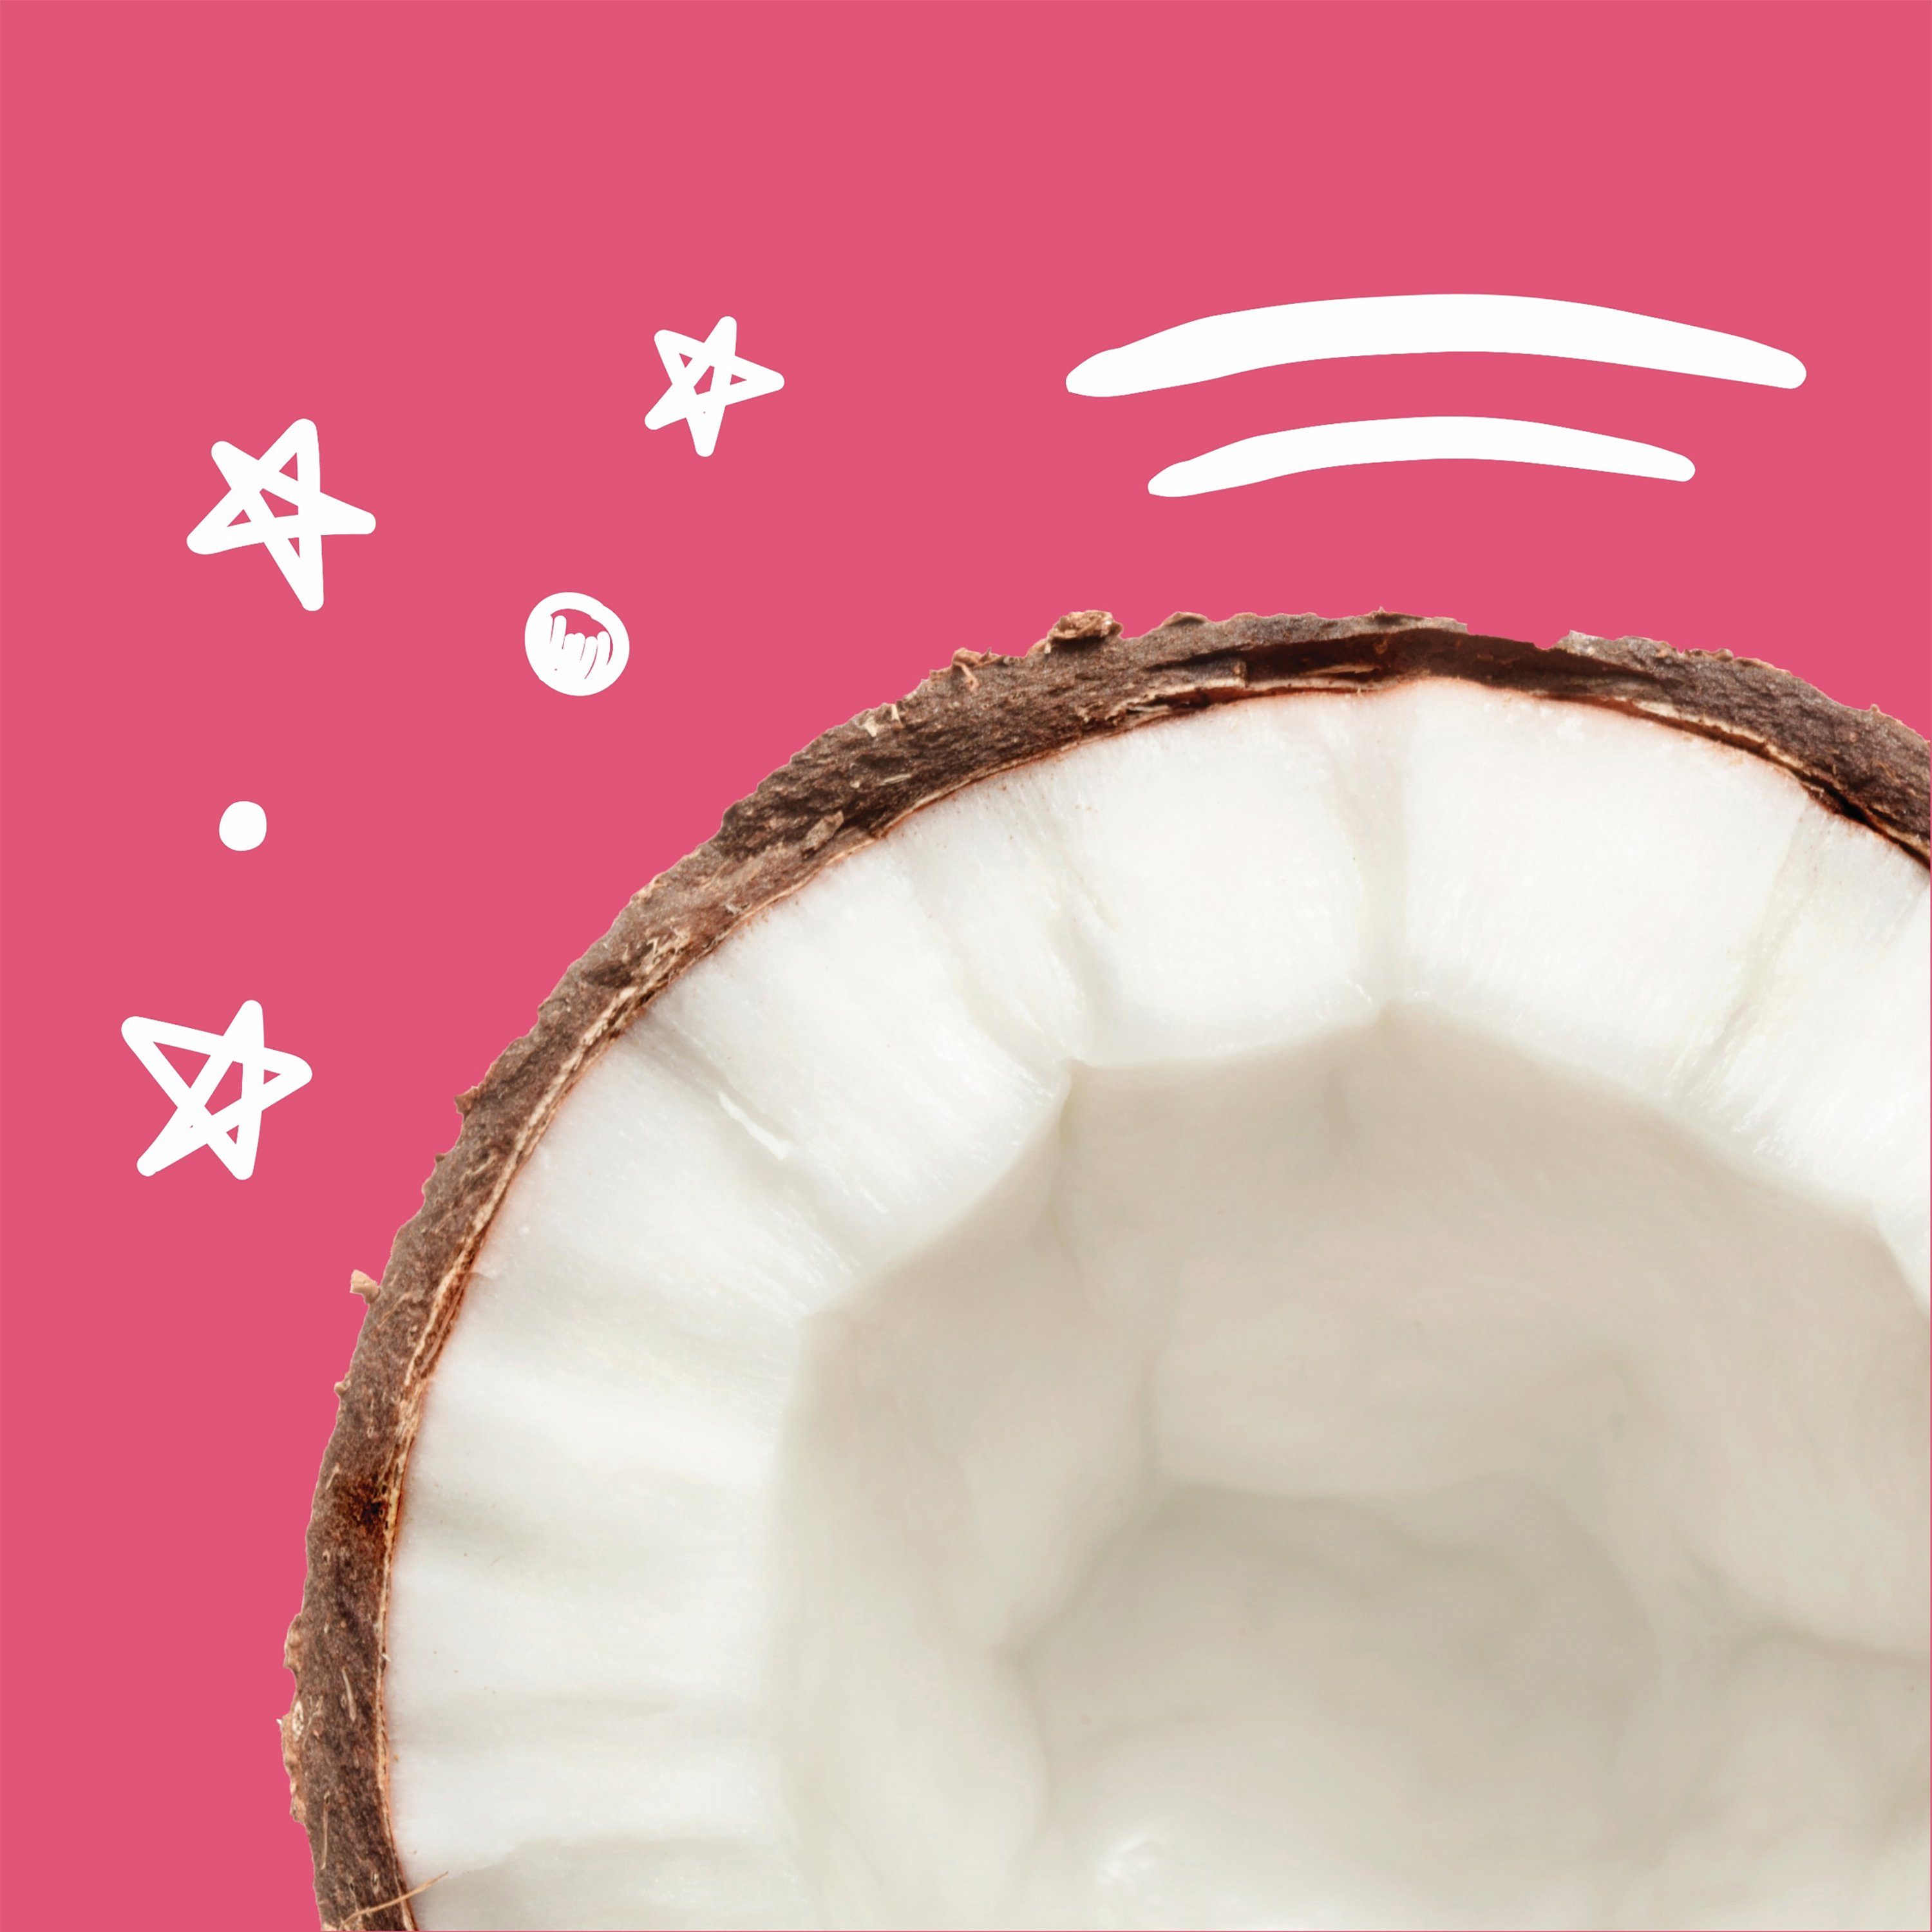 + Haarkur Hair cap Bear - mask Fruits Coconut